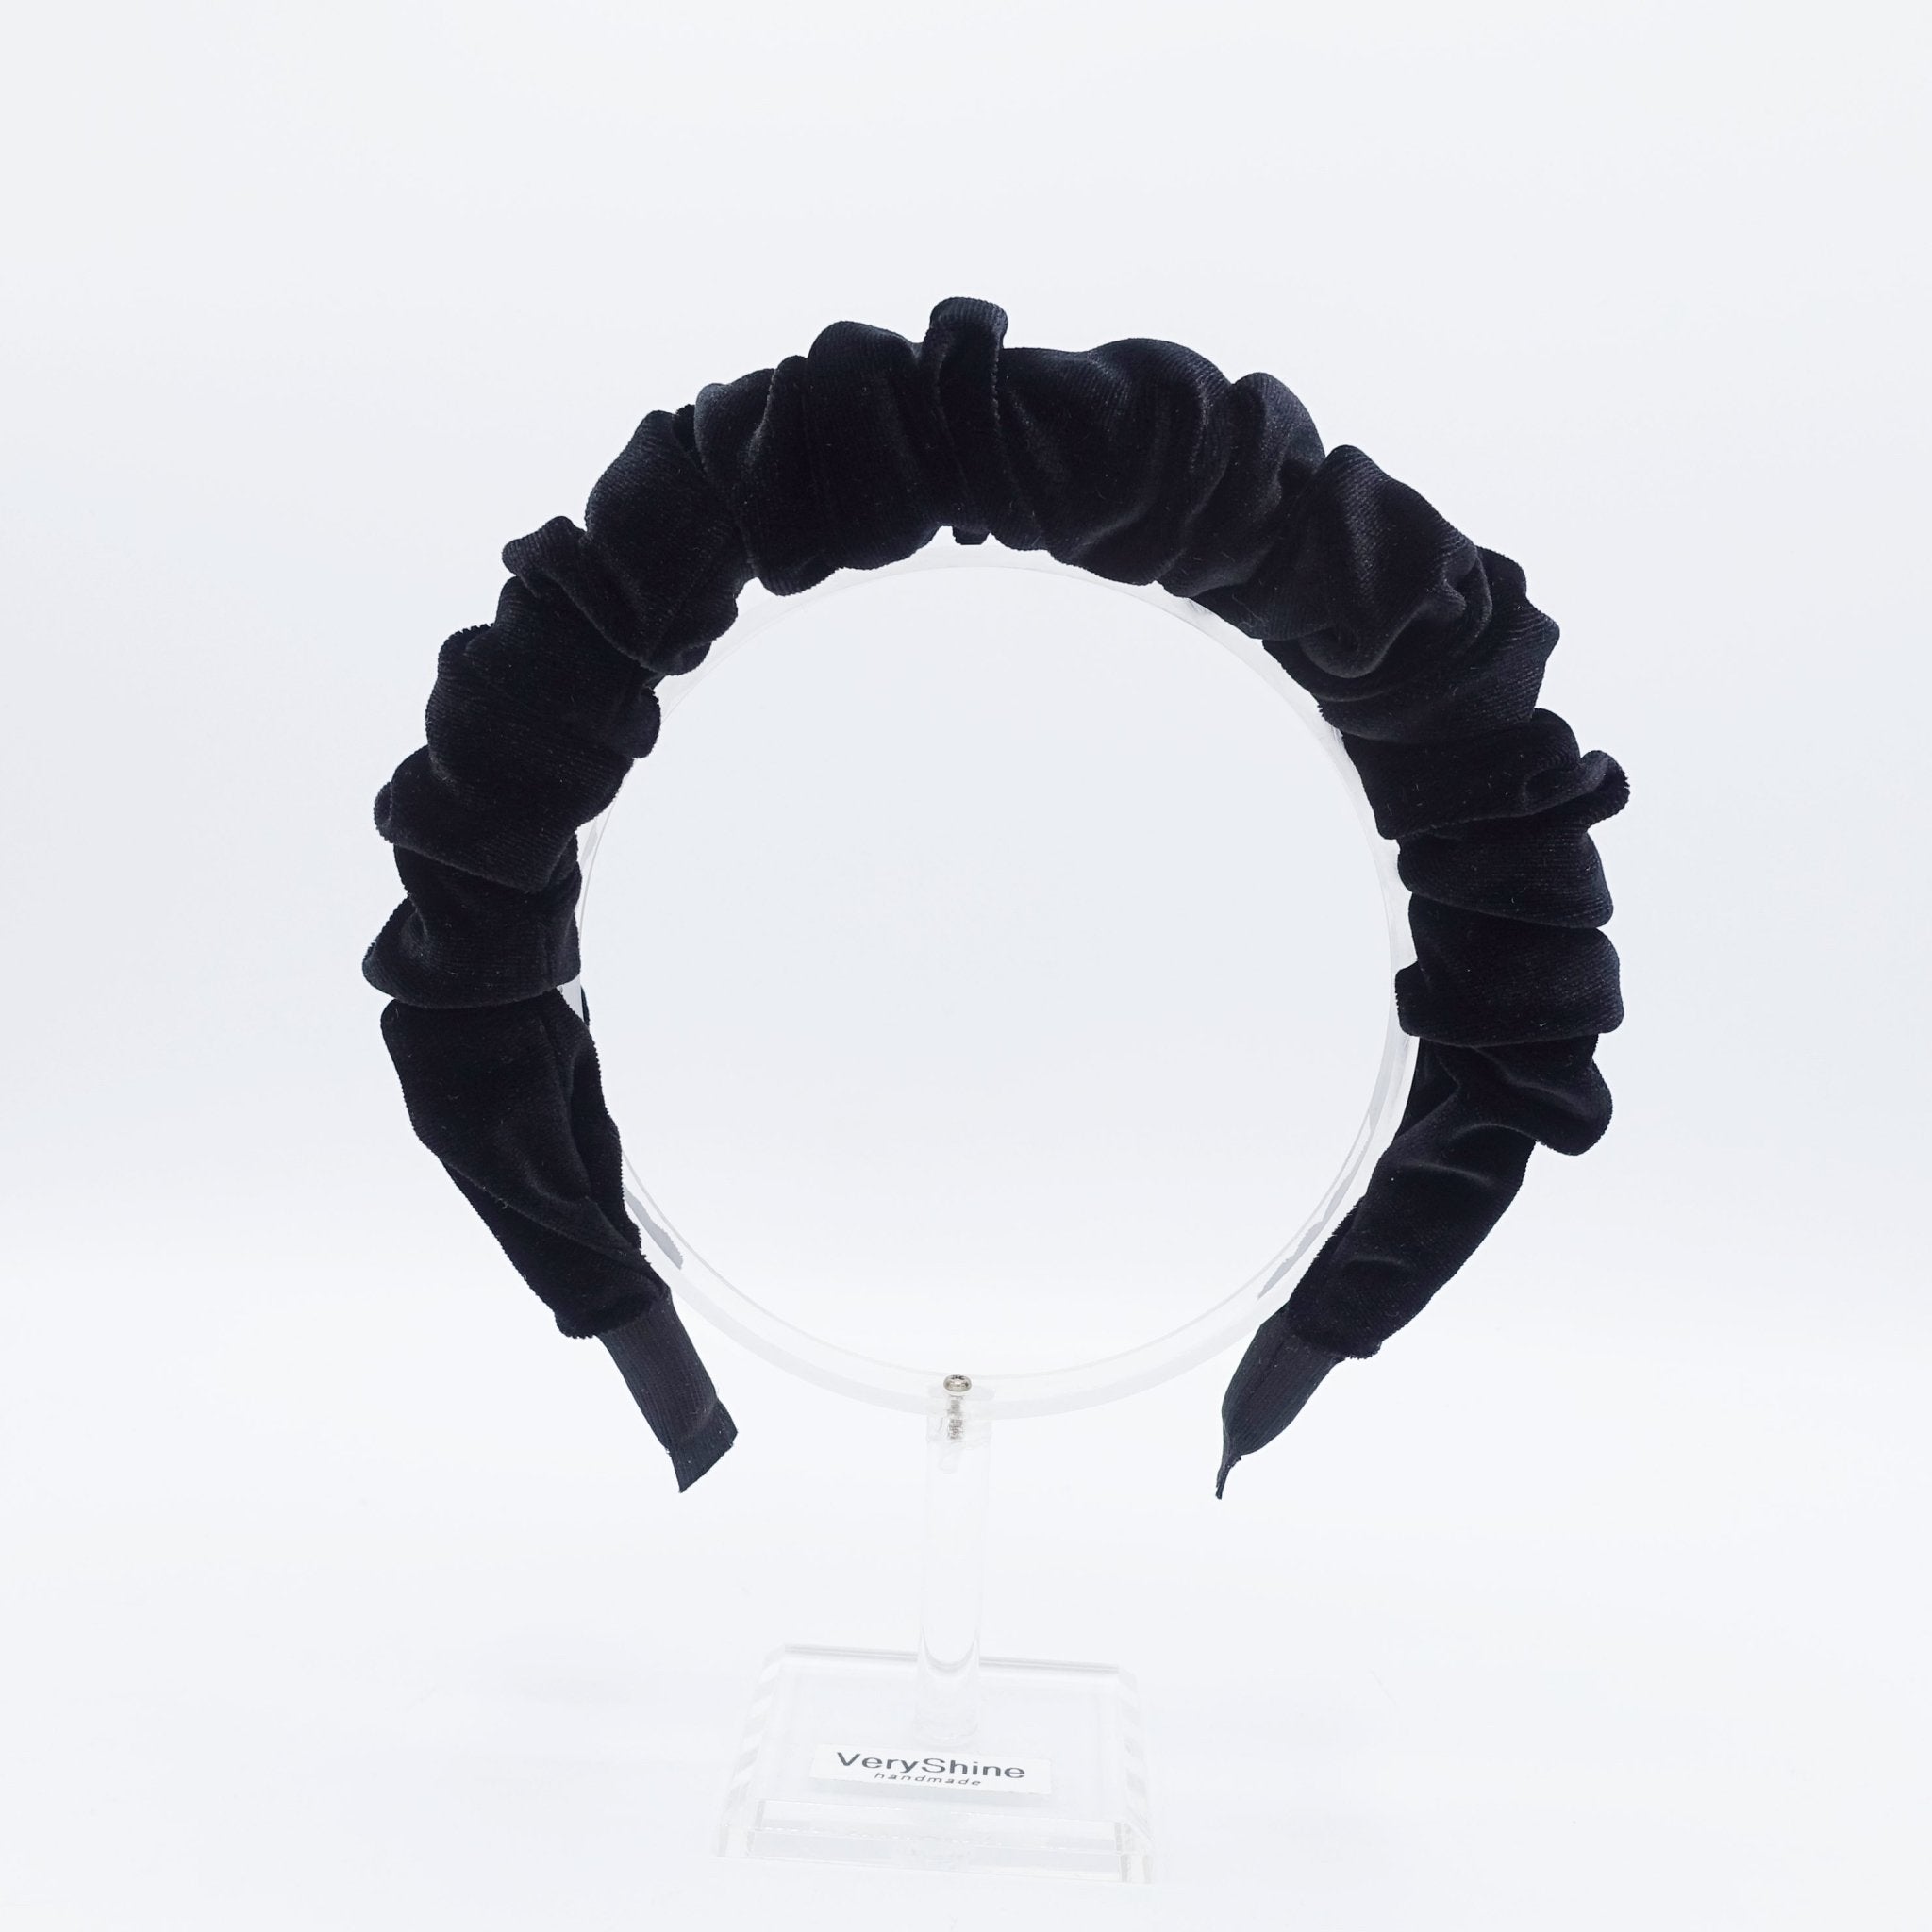 veryshine.com hairband/headband Black velvet padded and pleated headband stylish hairband hair accessory for women